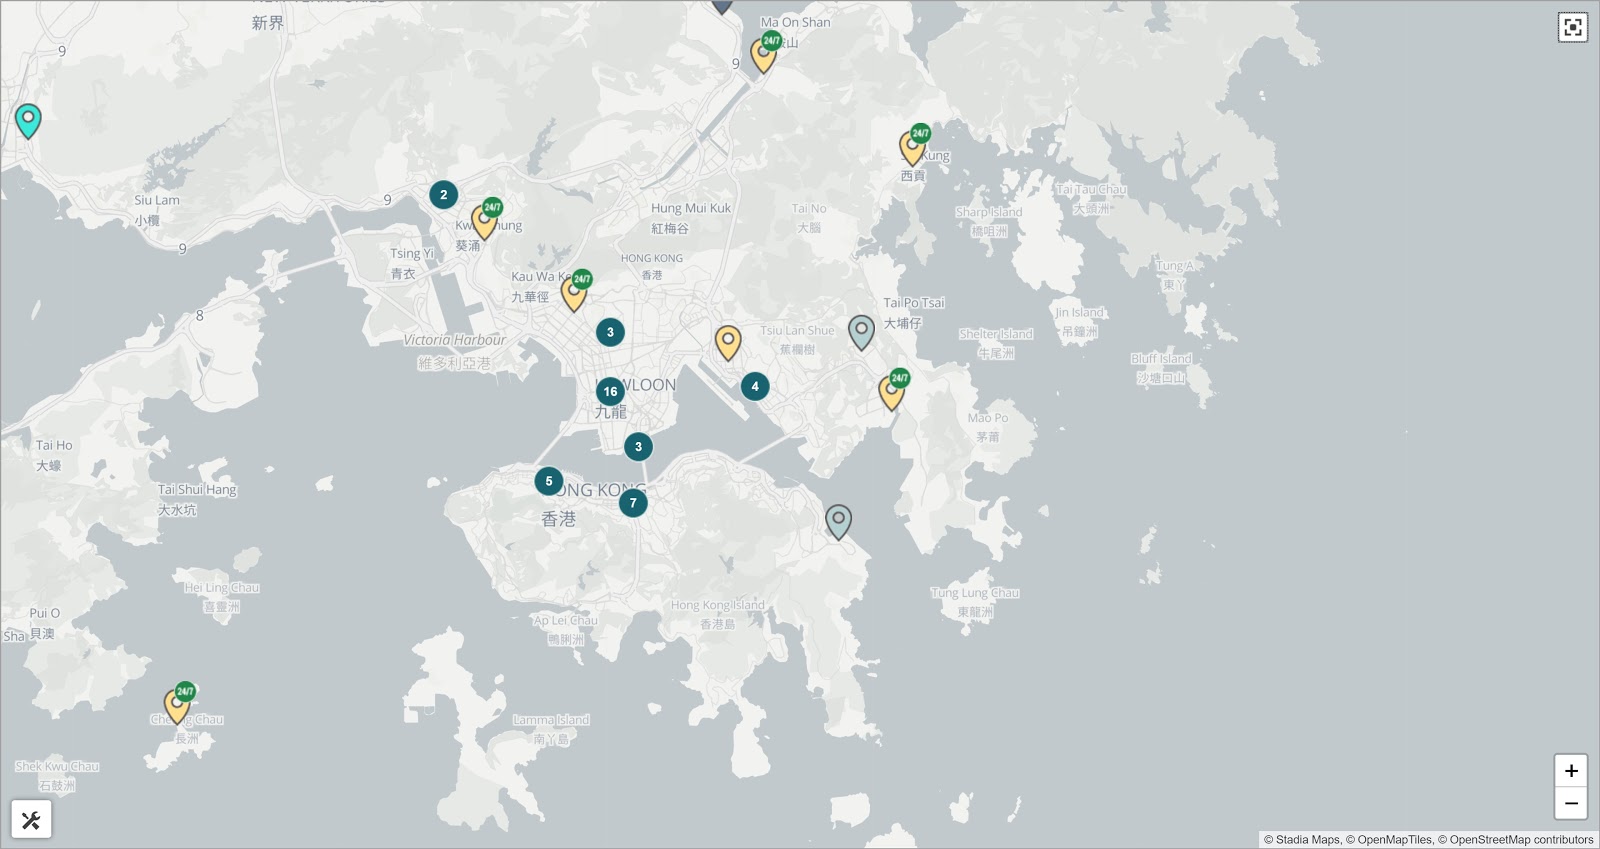 نقشه خودپردازهای بیت کوین در هنگ کنگ و اطراف آن